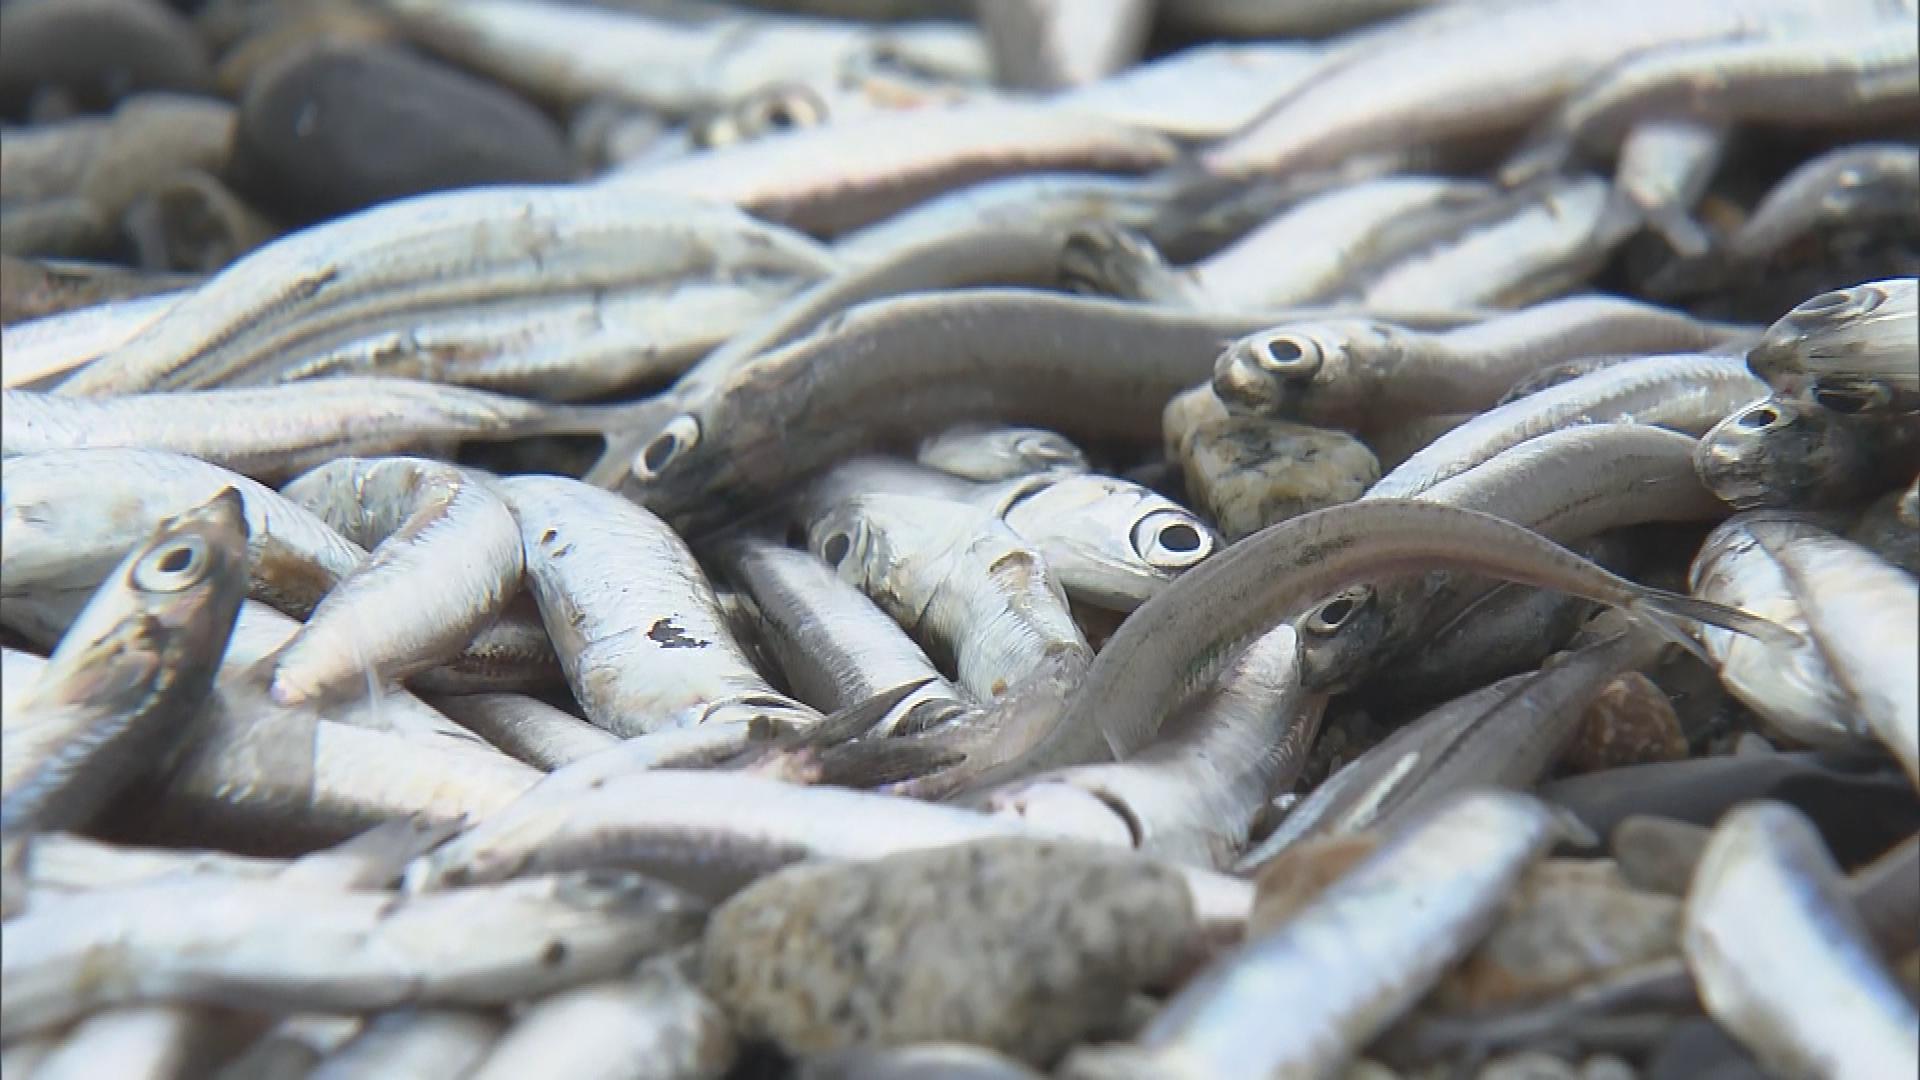 村上市の海岸に大量の魚が漂着 カタクチイワシとみられる【新潟】